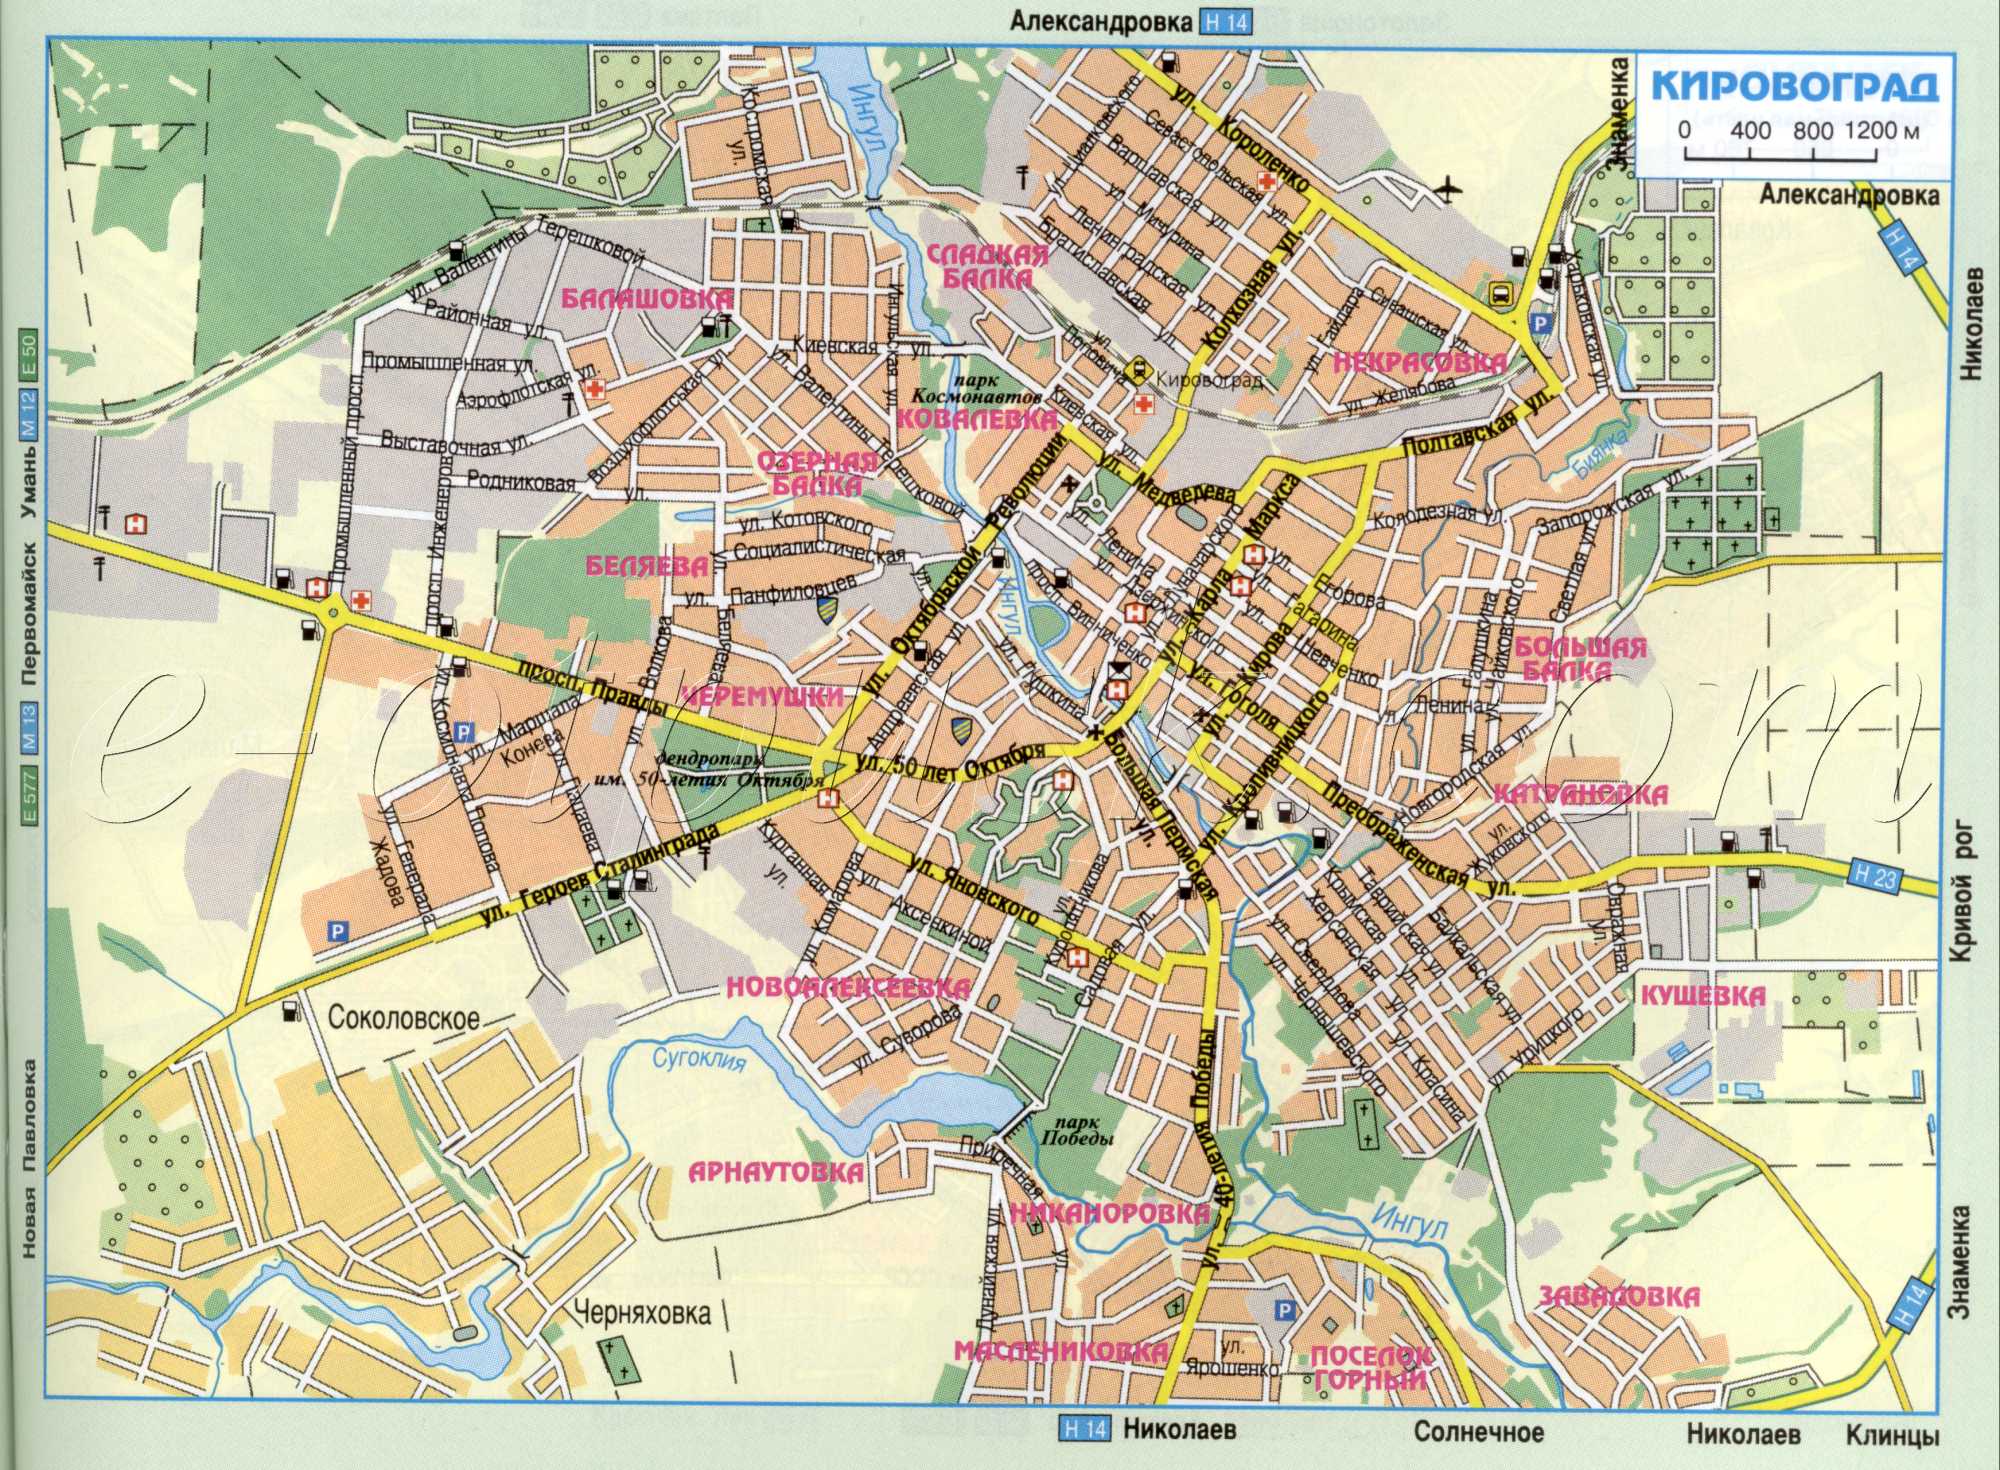 Kirowograd Karte - Grundstraßenautos des regionalen Zentrums der Region Kirowograd. Kostenlos herunterladen